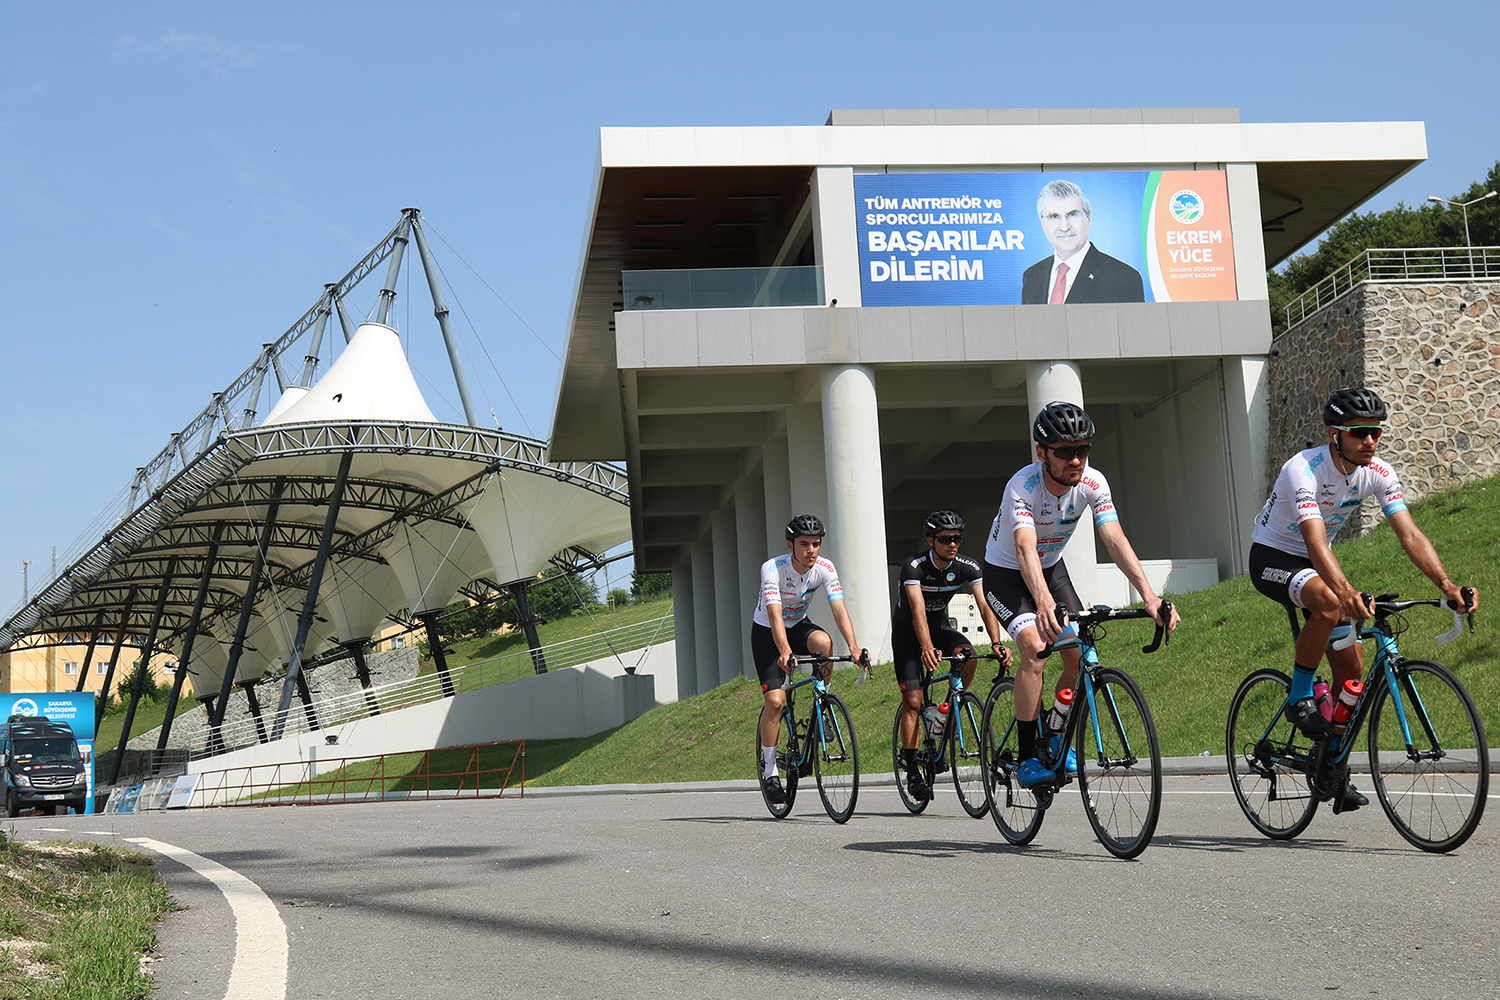 Yol Bisikleti Türkiye Şampiyonası 22 Eylül’de Sakarya’da başlıyor